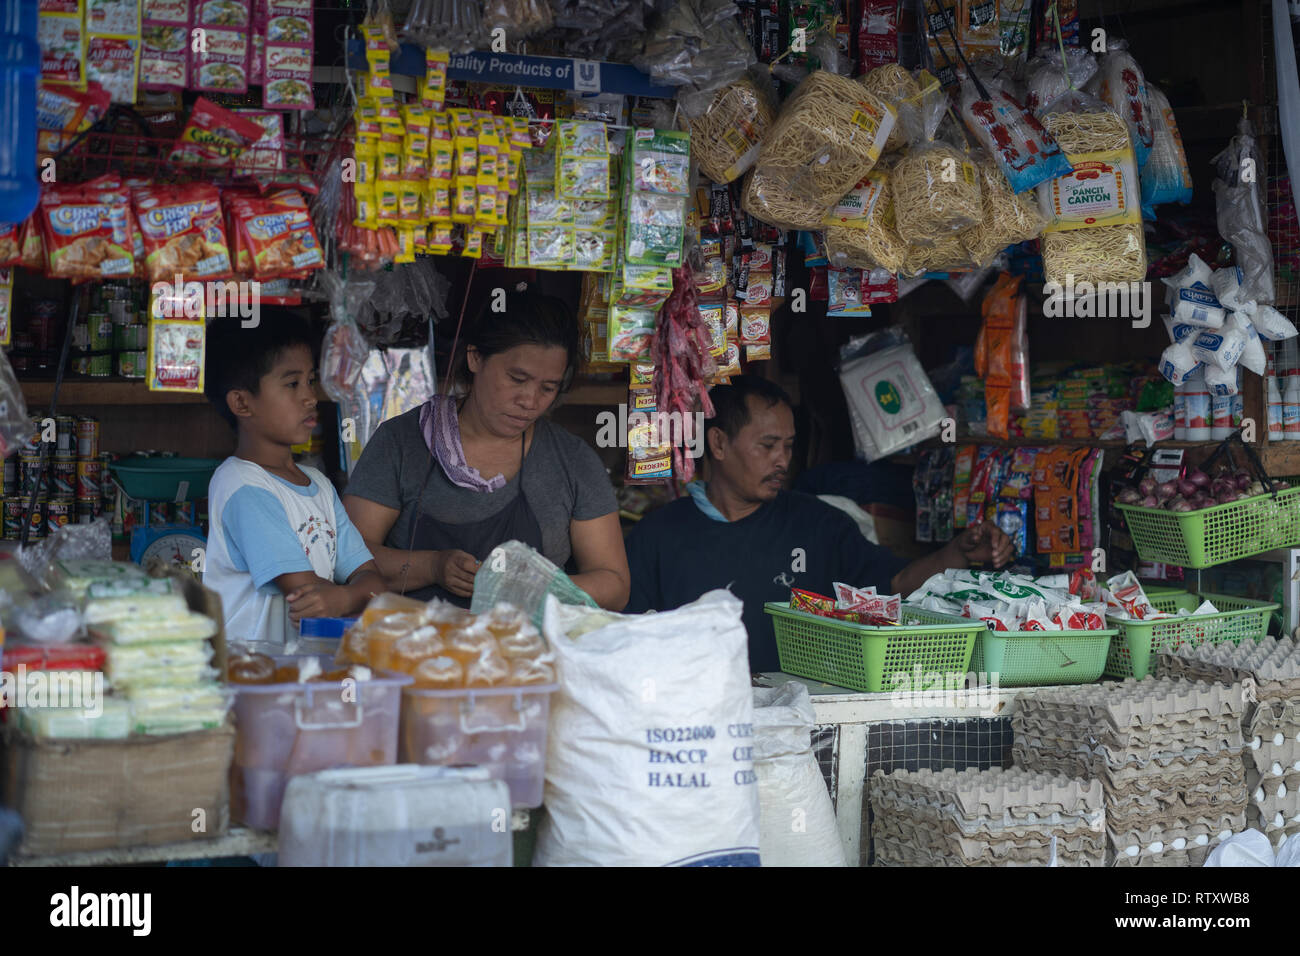 sari sari store business plan in the philippines